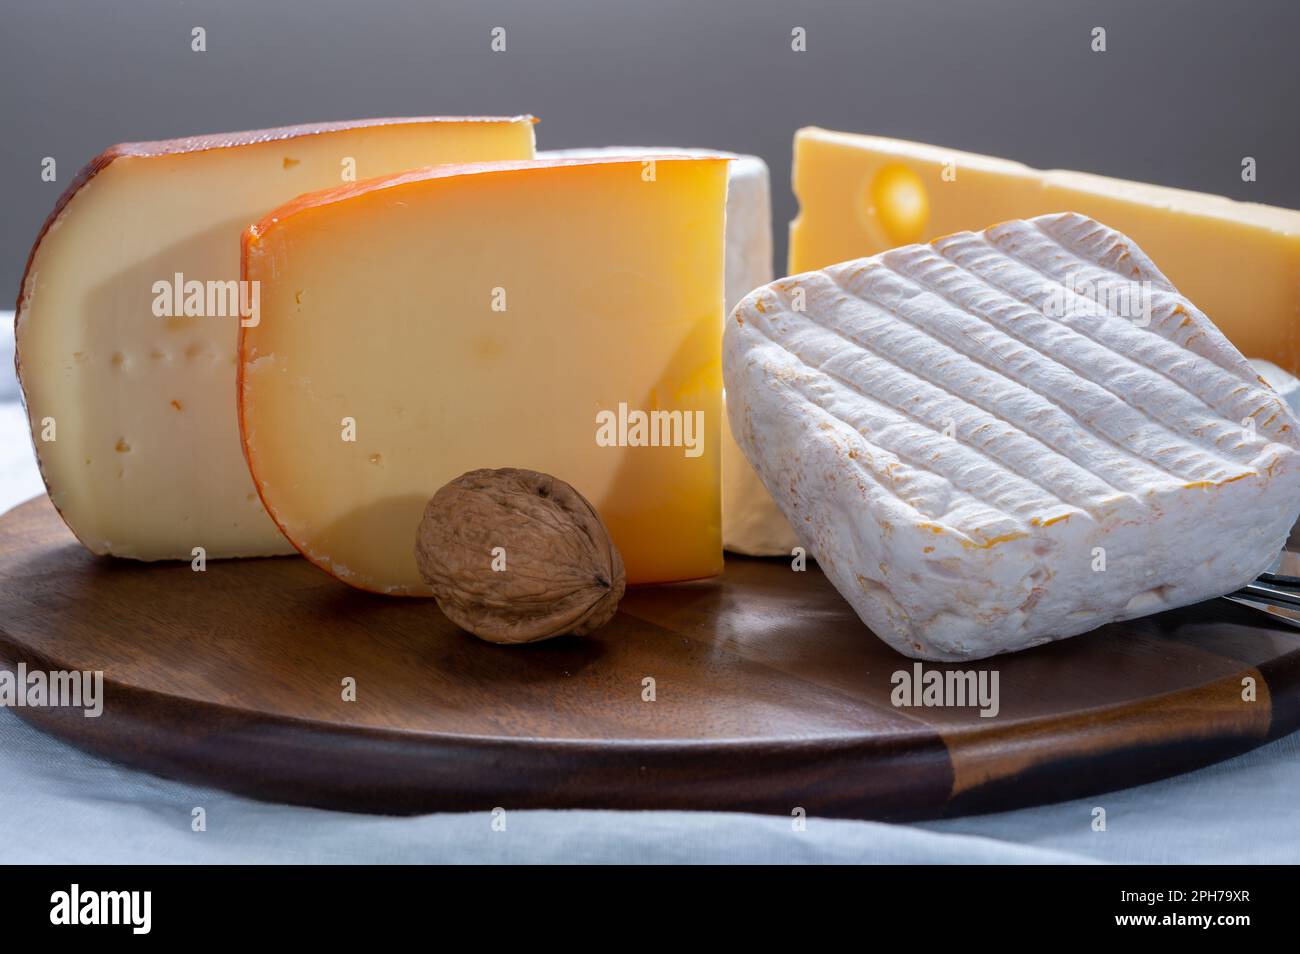 Sammlung belgischer Käsesorten, weicher gelber Kuhmilchkäse mit weißem Schimmel aus Brügge, Bouquet des moines aus der Abtei Val-Dieu, cremiger Käse und B. Stockfoto